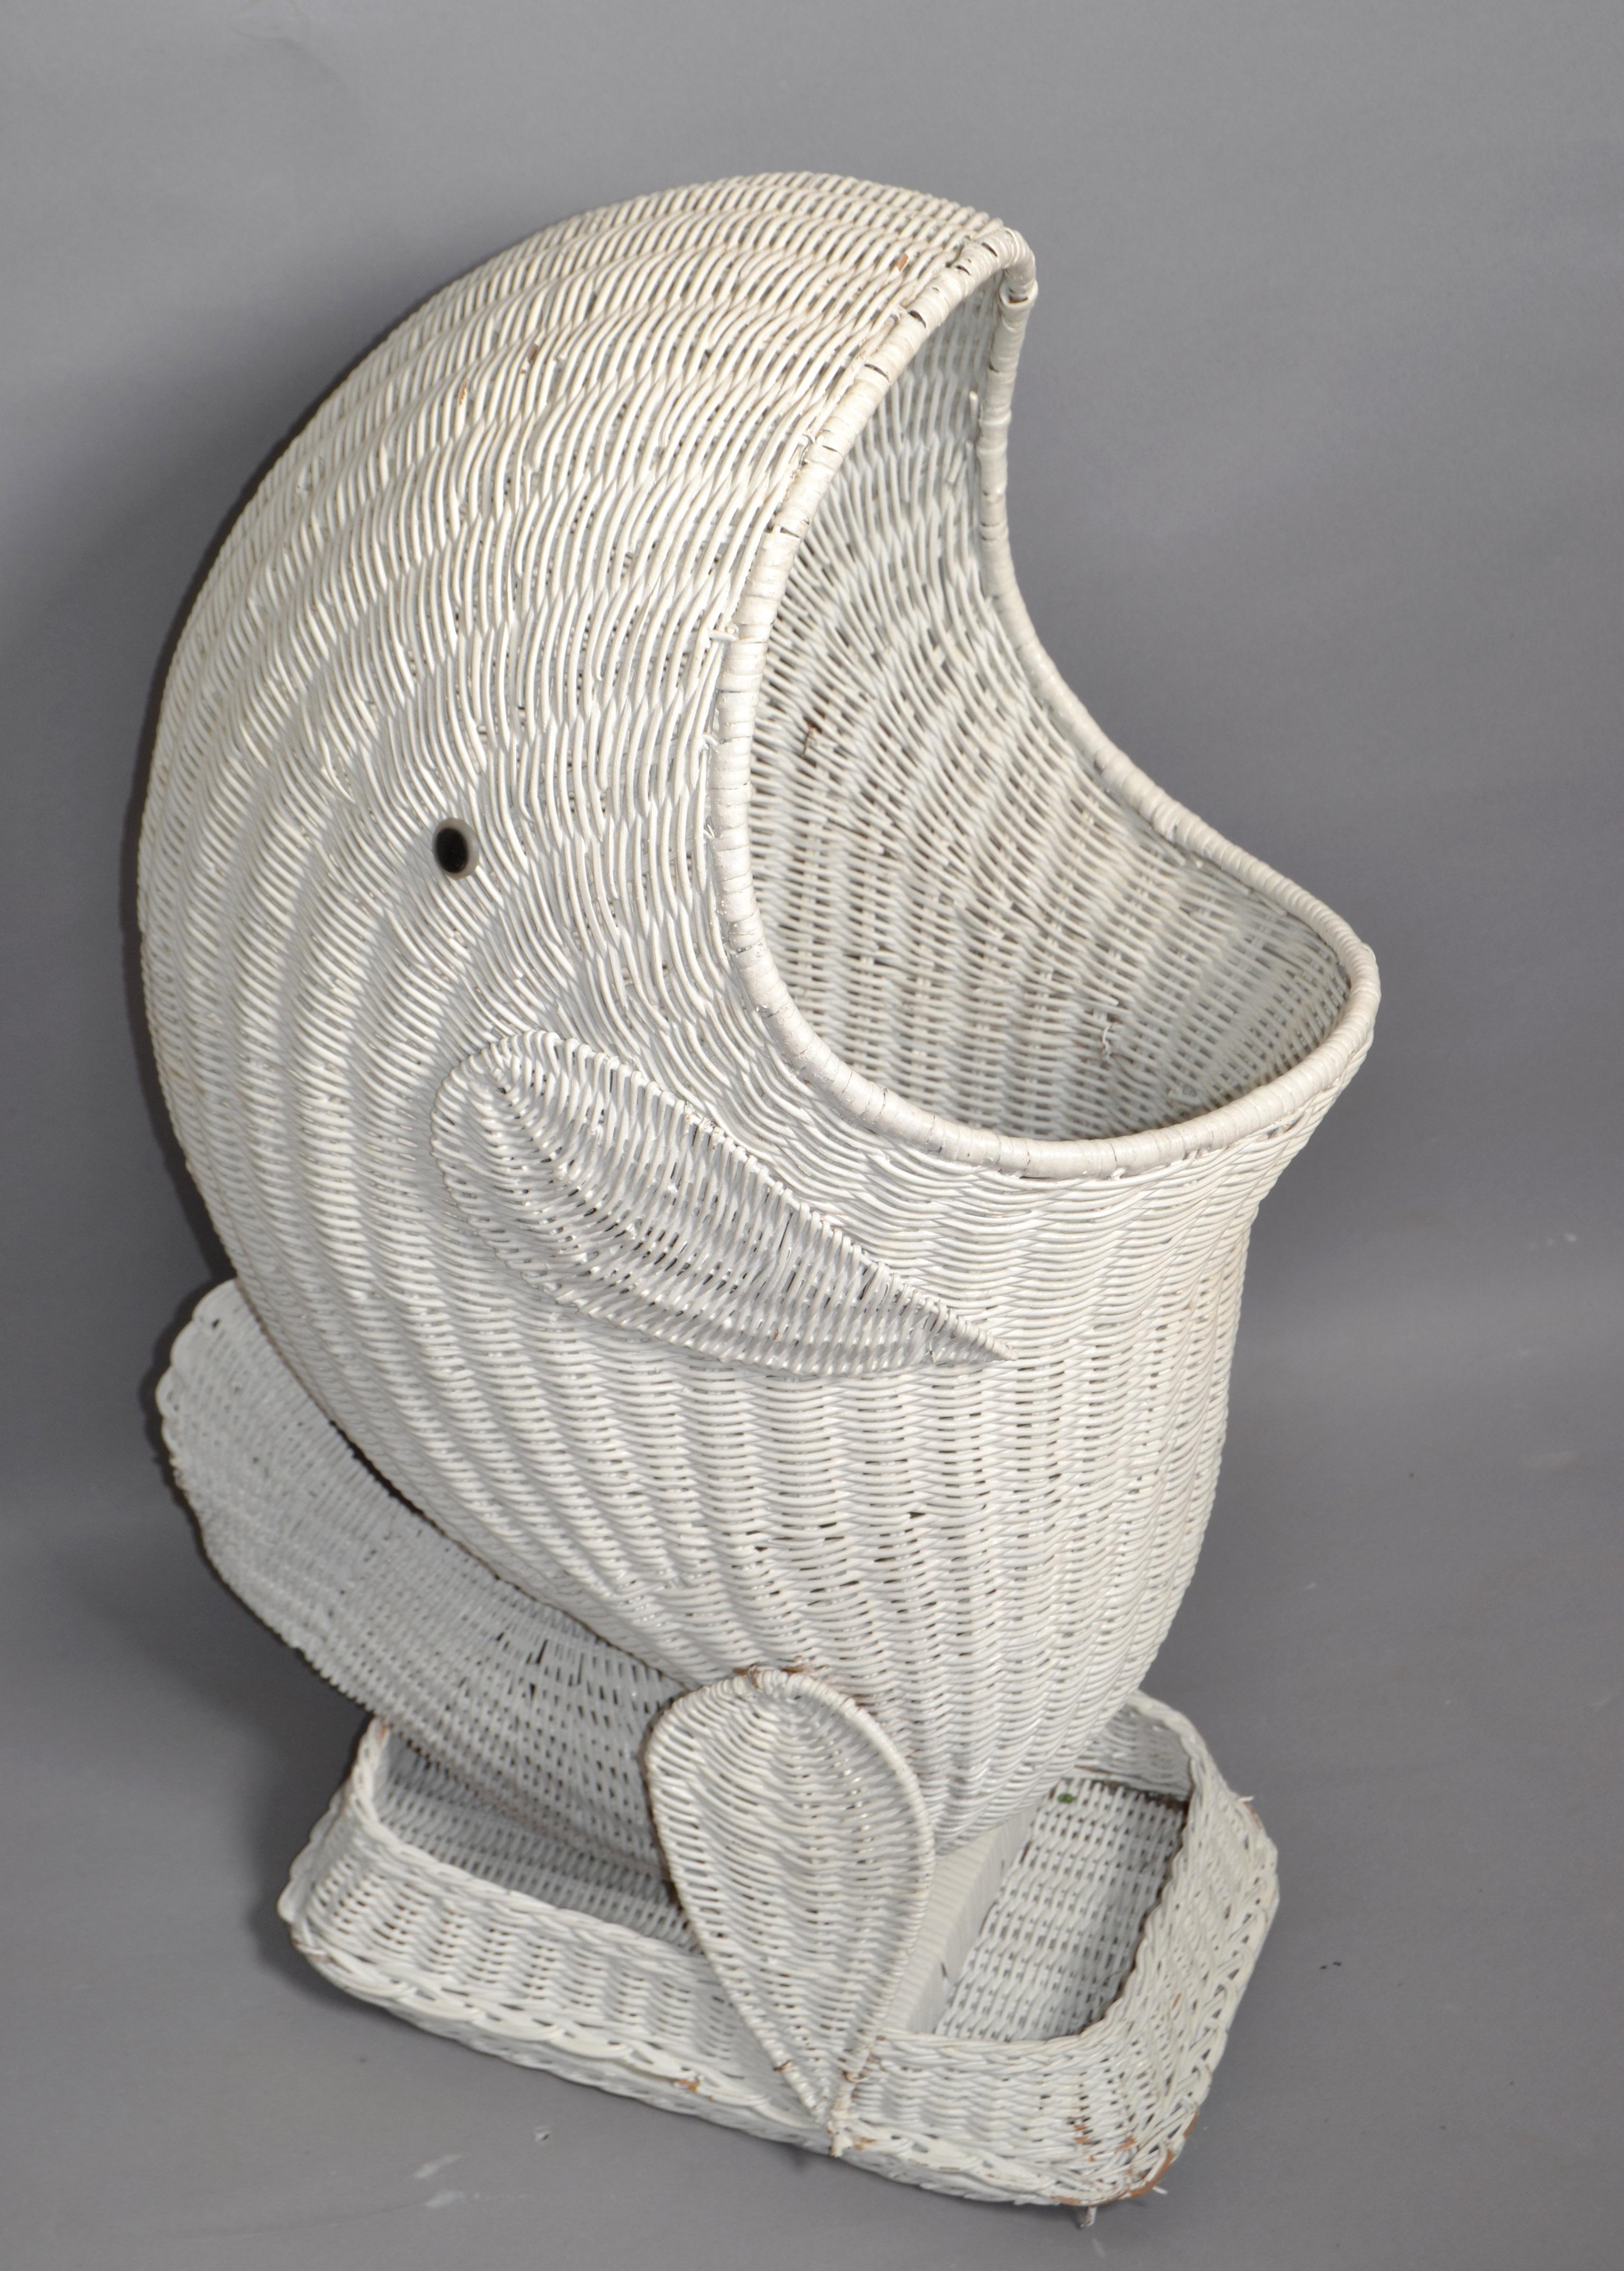 Mario Lopez Torres Style Mid-Century Modern Panier à dauphin blanc tissé à la main, vase de rangement pour jouets, sculpture animalière.
Style bohème fabriqué en Amérique à la fin du 20e siècle.
En parfait état d'origine, avec quelques marques